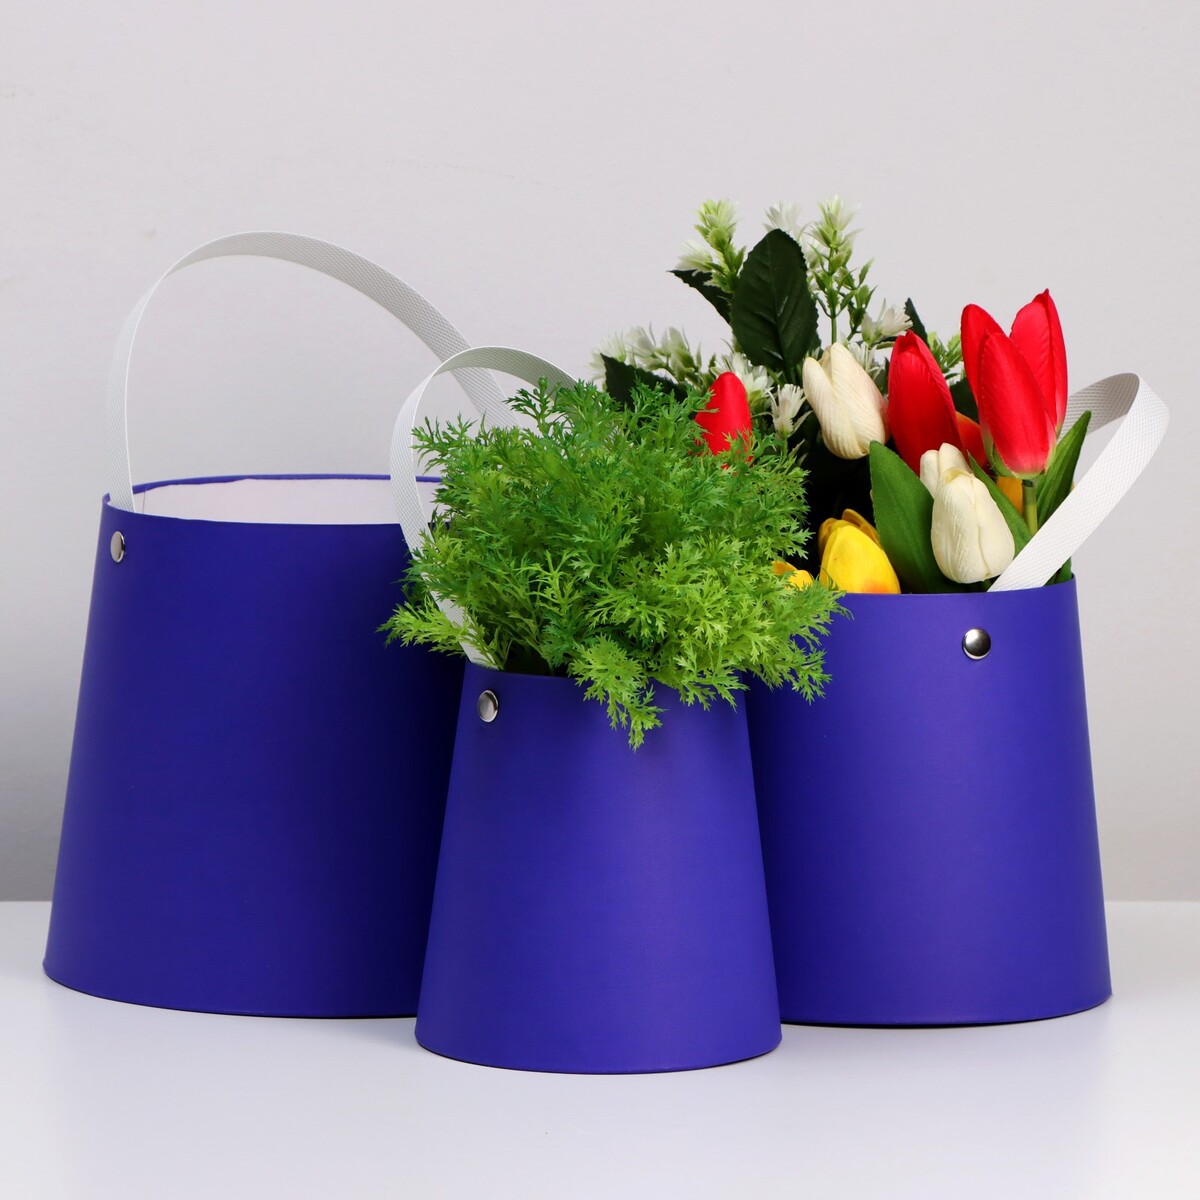 Набор коробок 3 в 1 обратный конус фиолетовый без крышек с ручкой 11-14 х 14-16 х 16-18 см набор для творчества dream studio фиолетовый